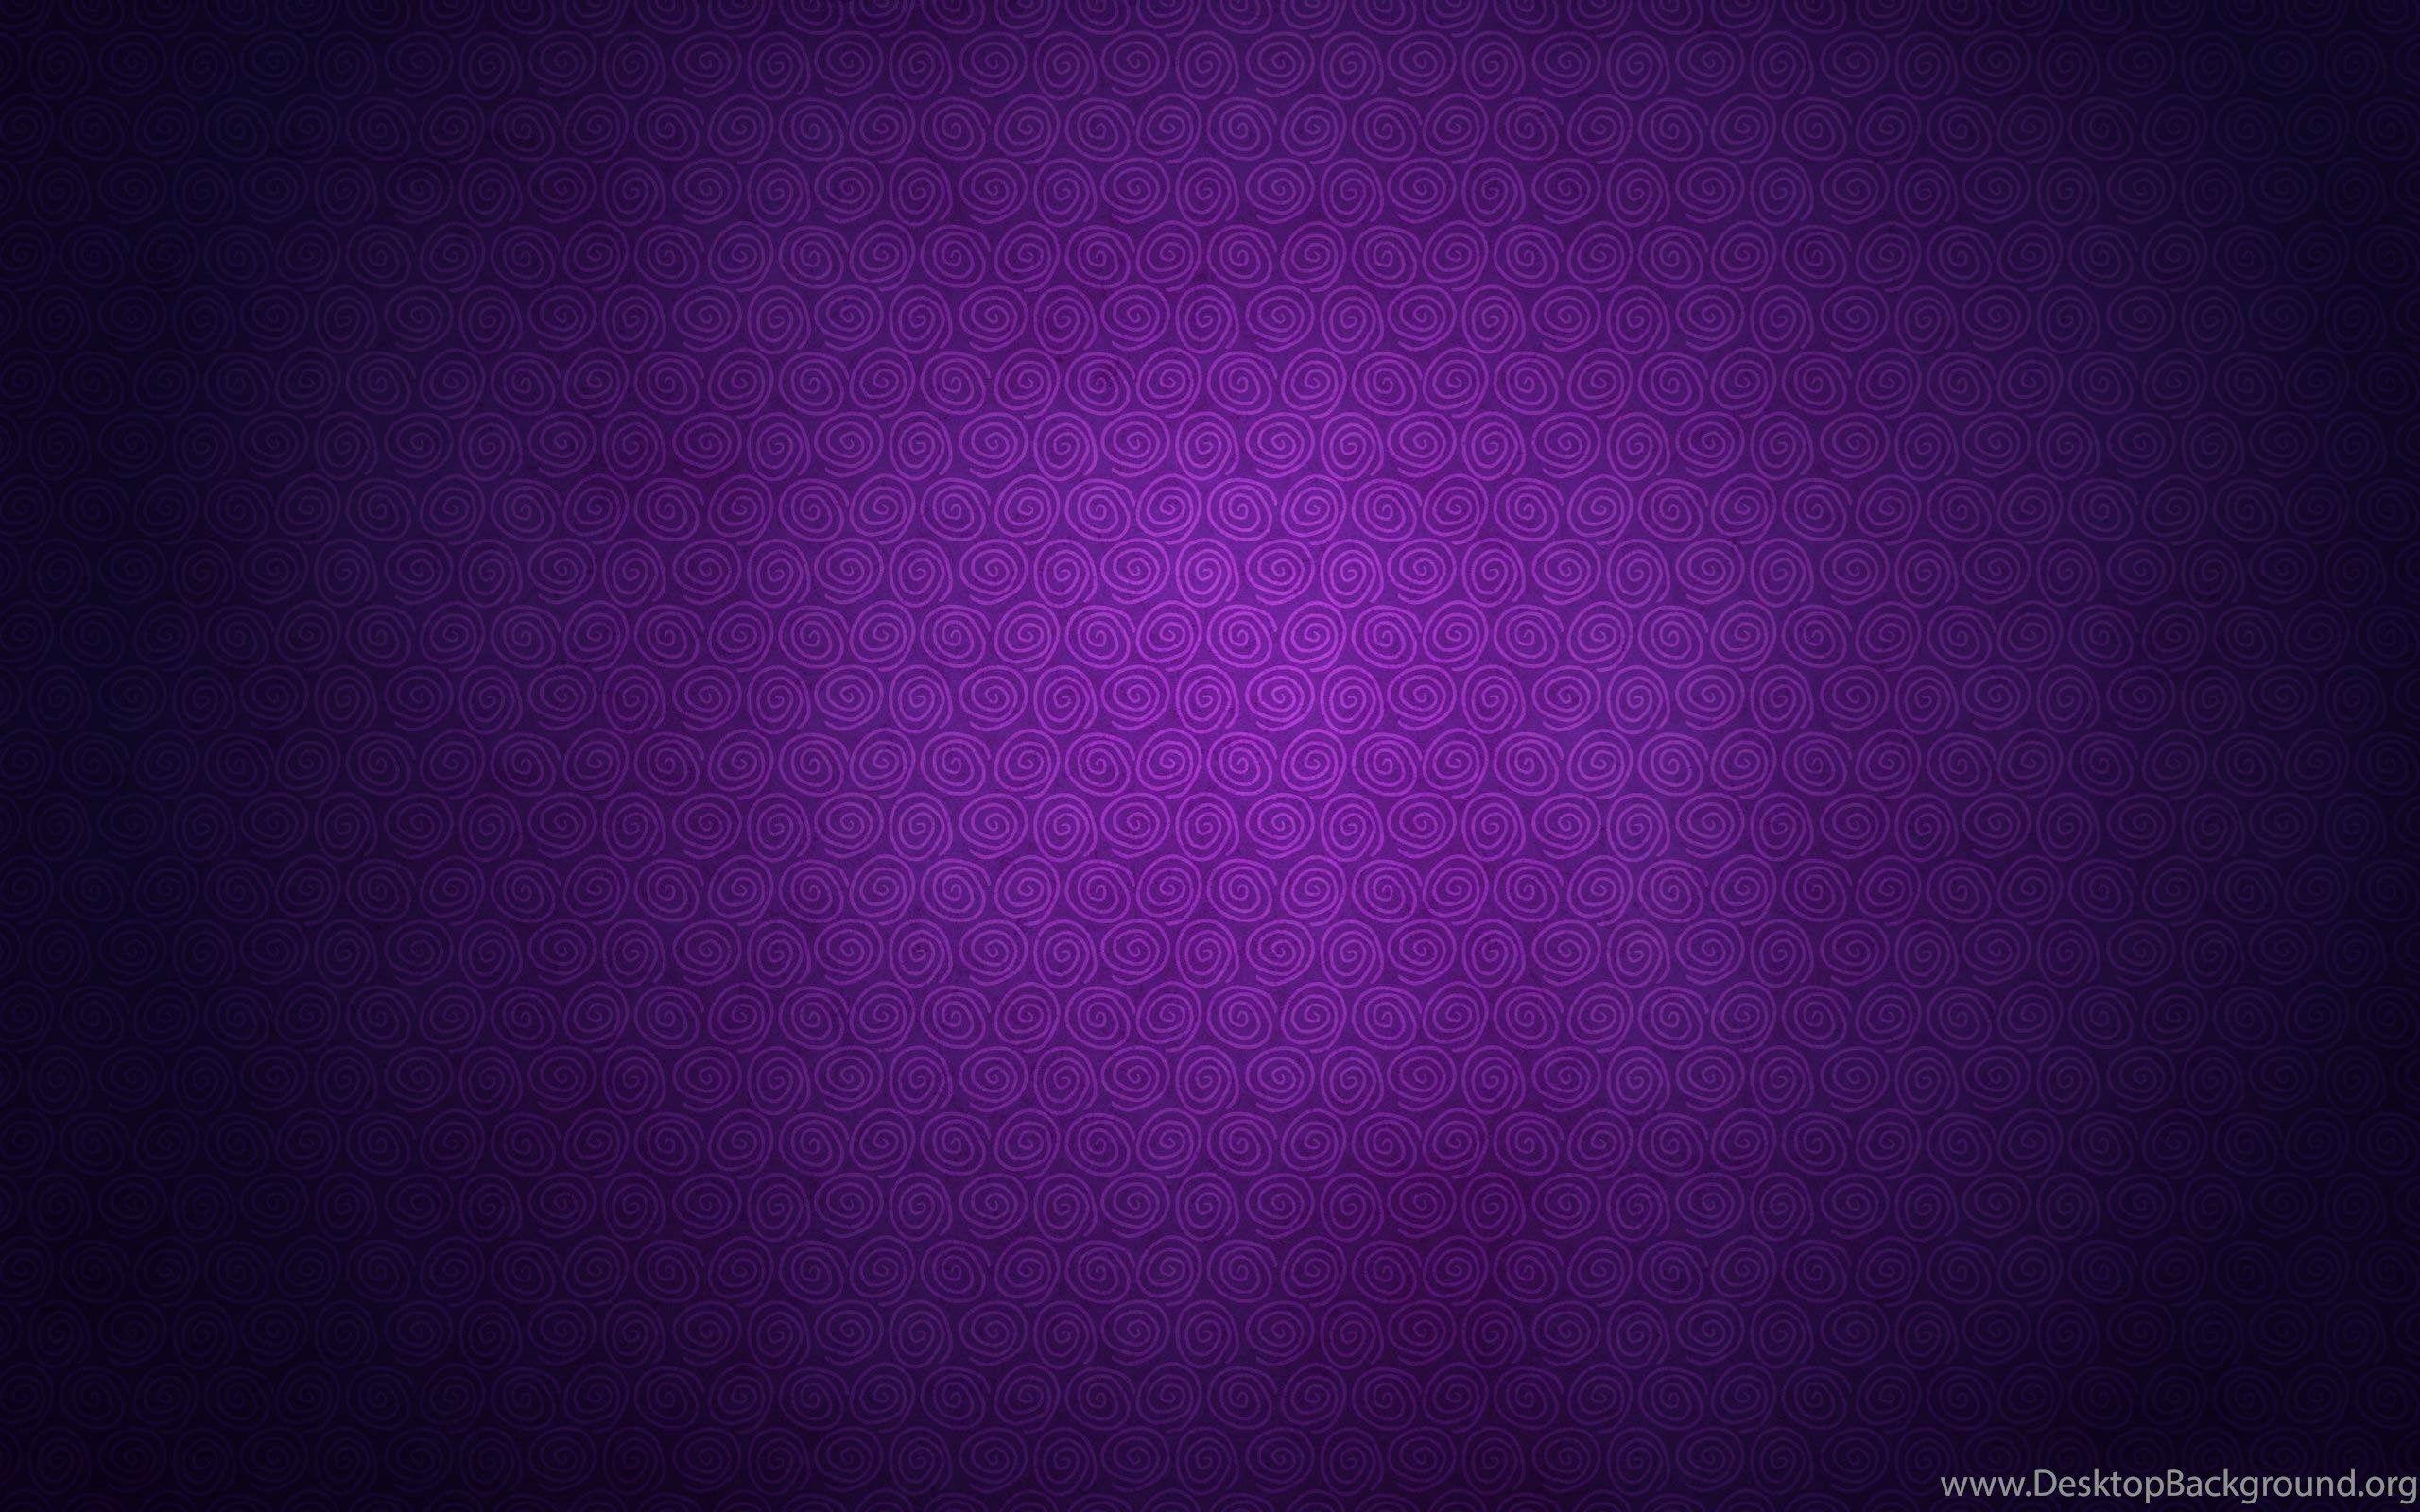 Plain Purple Wallpaper Full HD For Desktop Uncalke.com Desktop